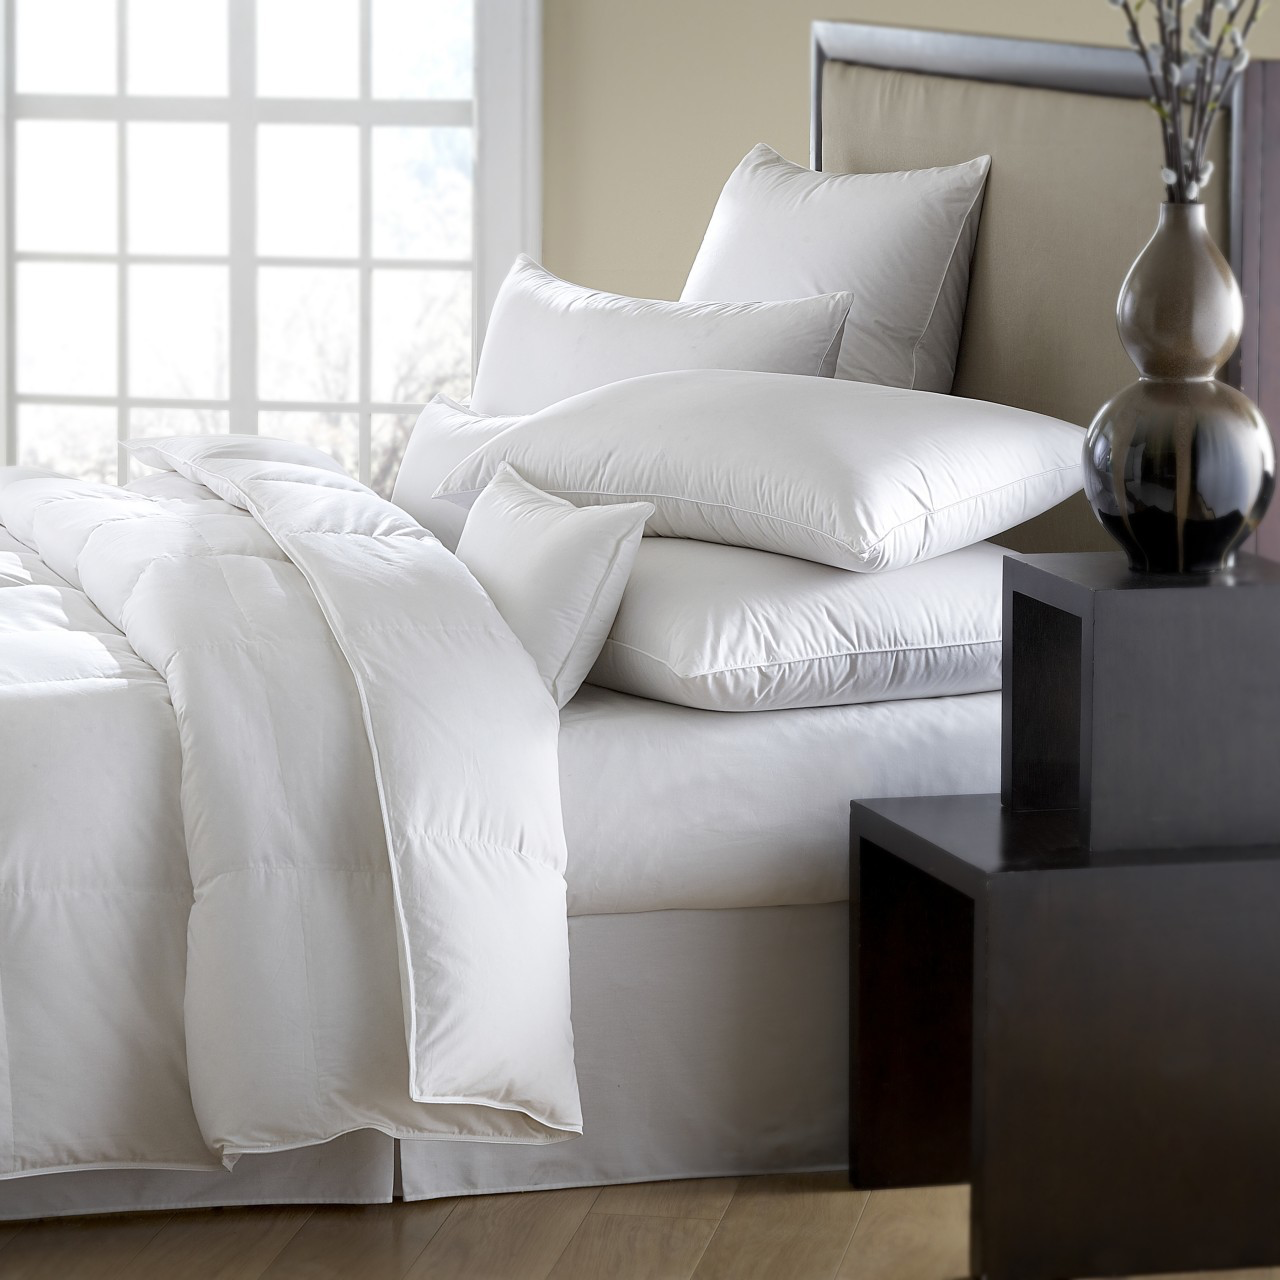 mackenza 560 fill power white down comforter, downright, insert, - adorn.house